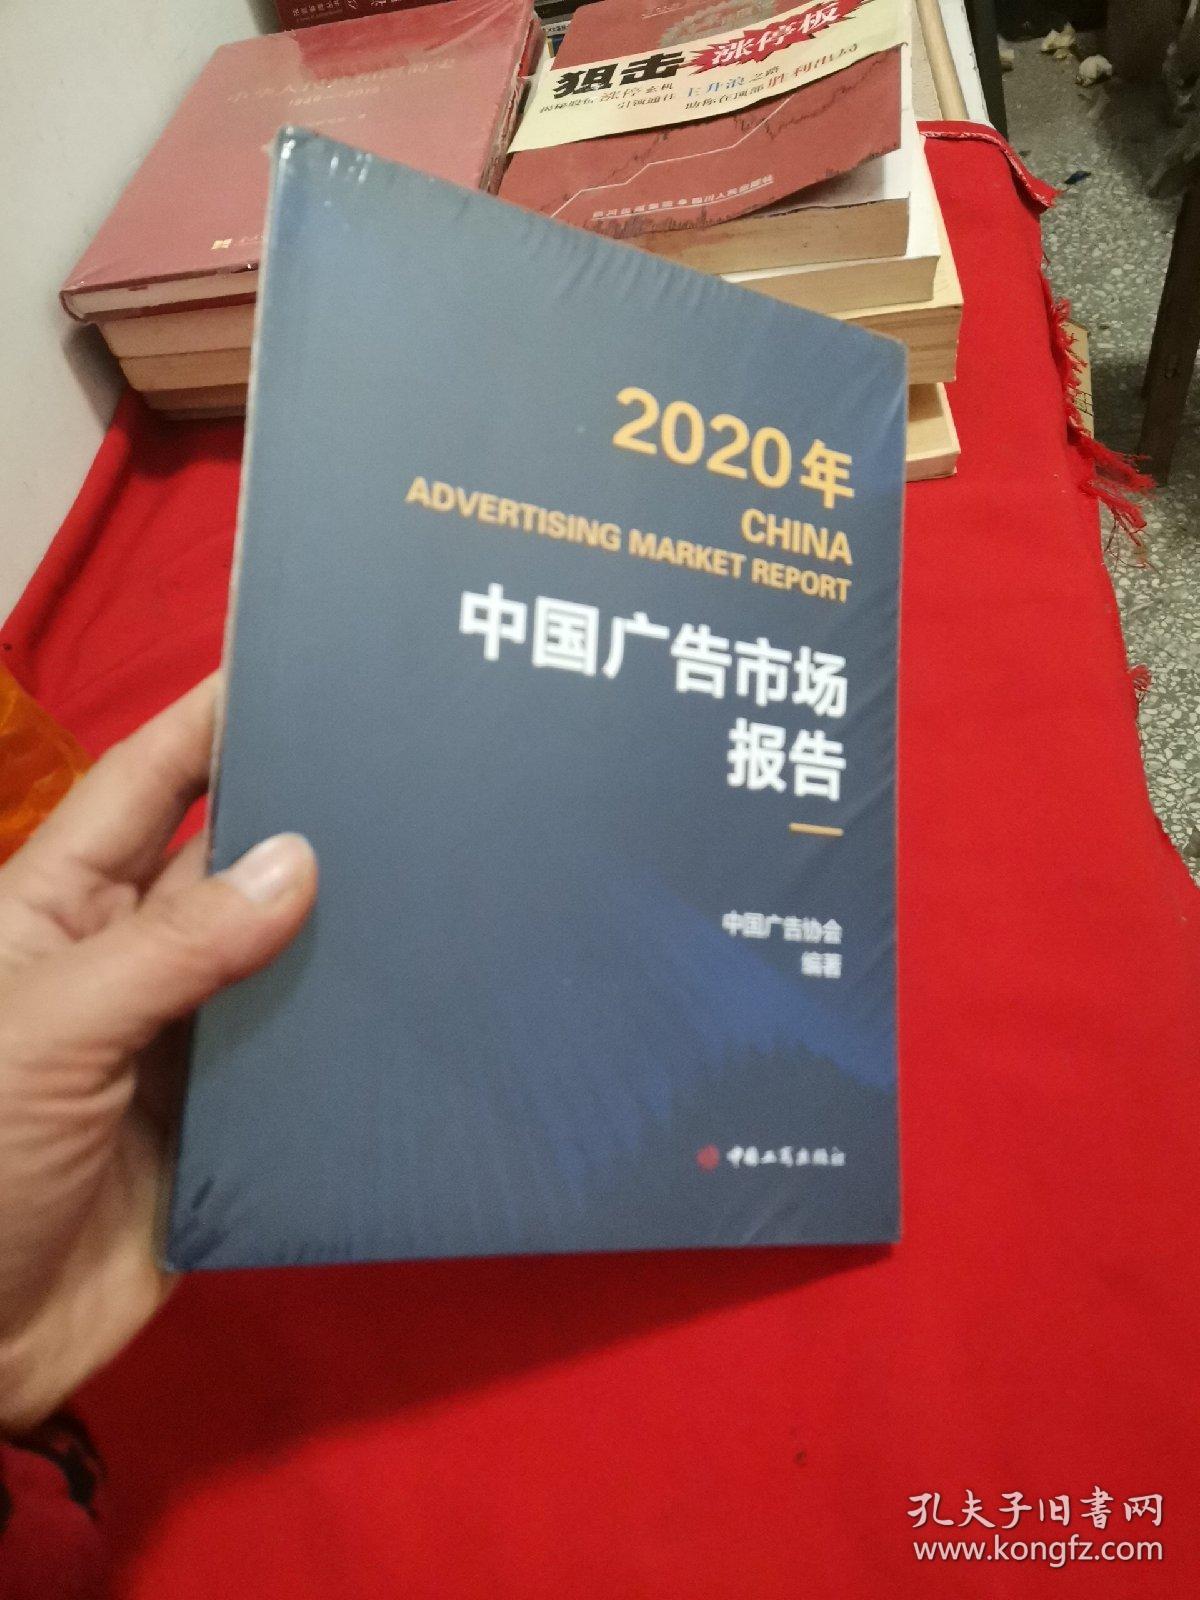 2020年 CHINA ADVERTISING MARKET REPORT 中国广告市场报告